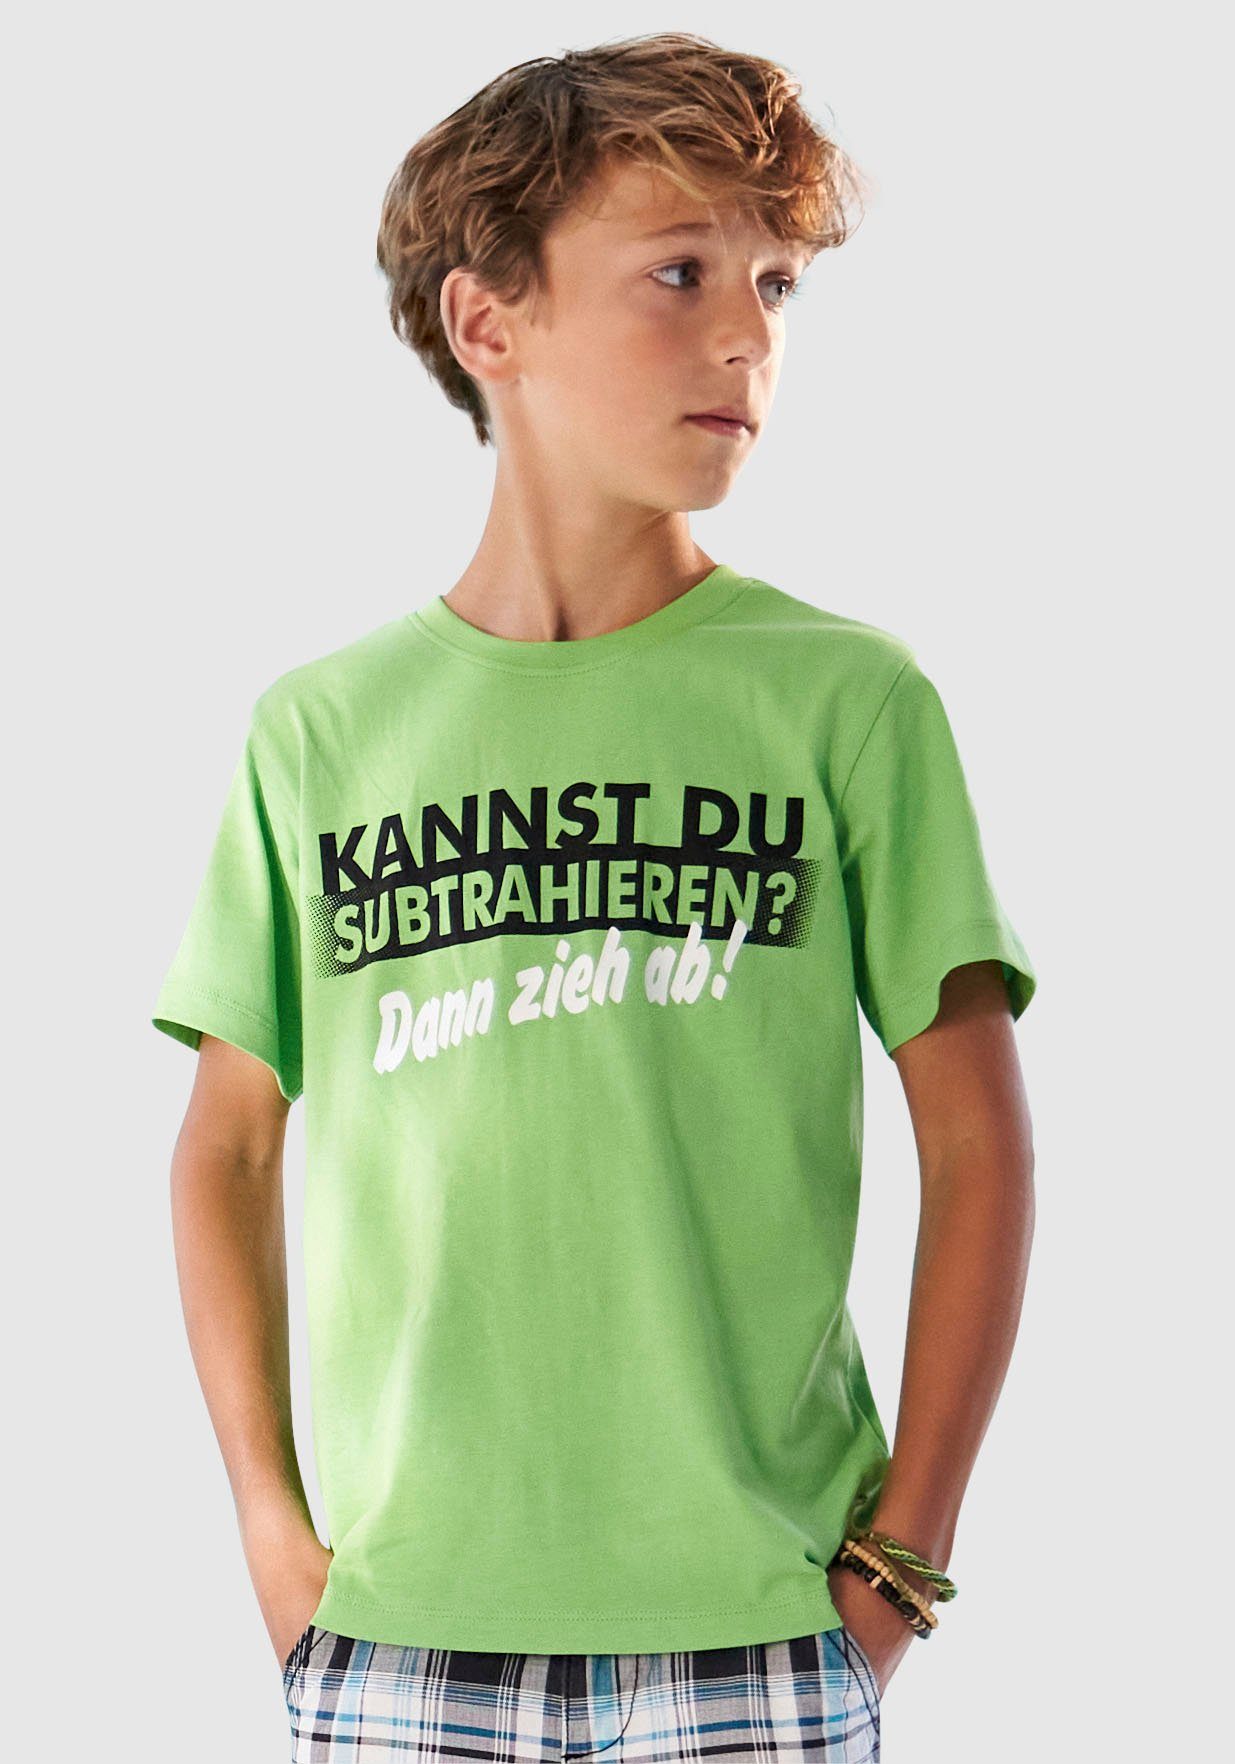 SUBTRAHIEREN?, T-Shirt KANNST DU Spruch KIDSWORLD